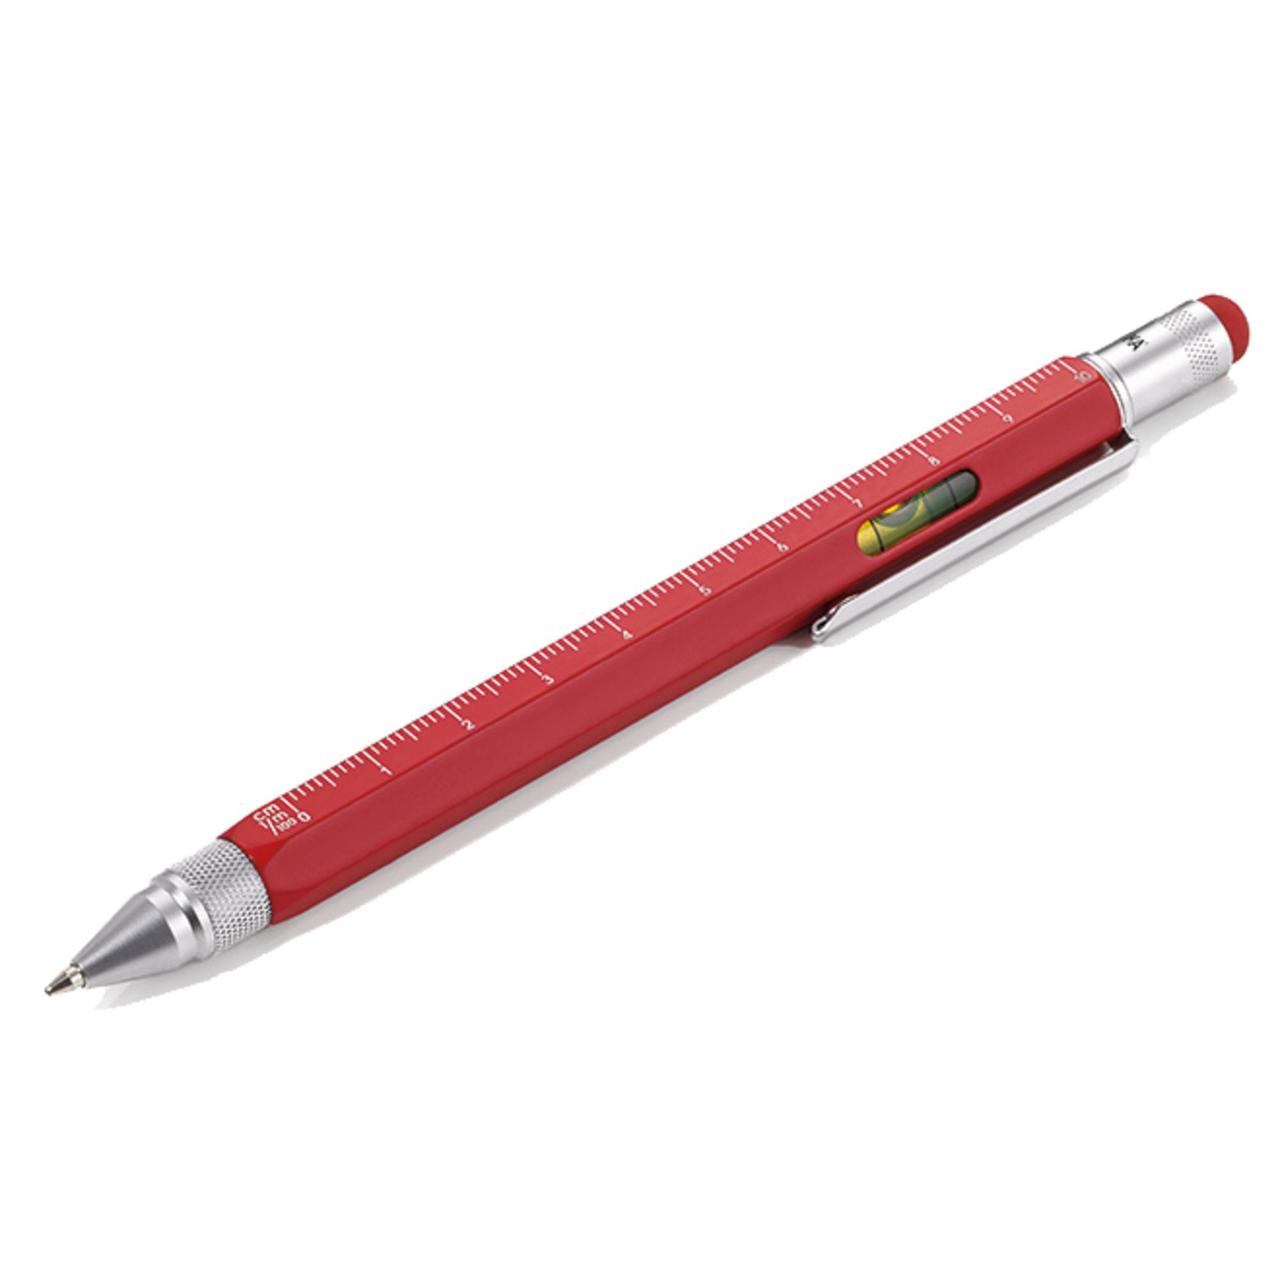 Ручка шариковая Construction, мультиинструмент, красная (артикул 6462.50)